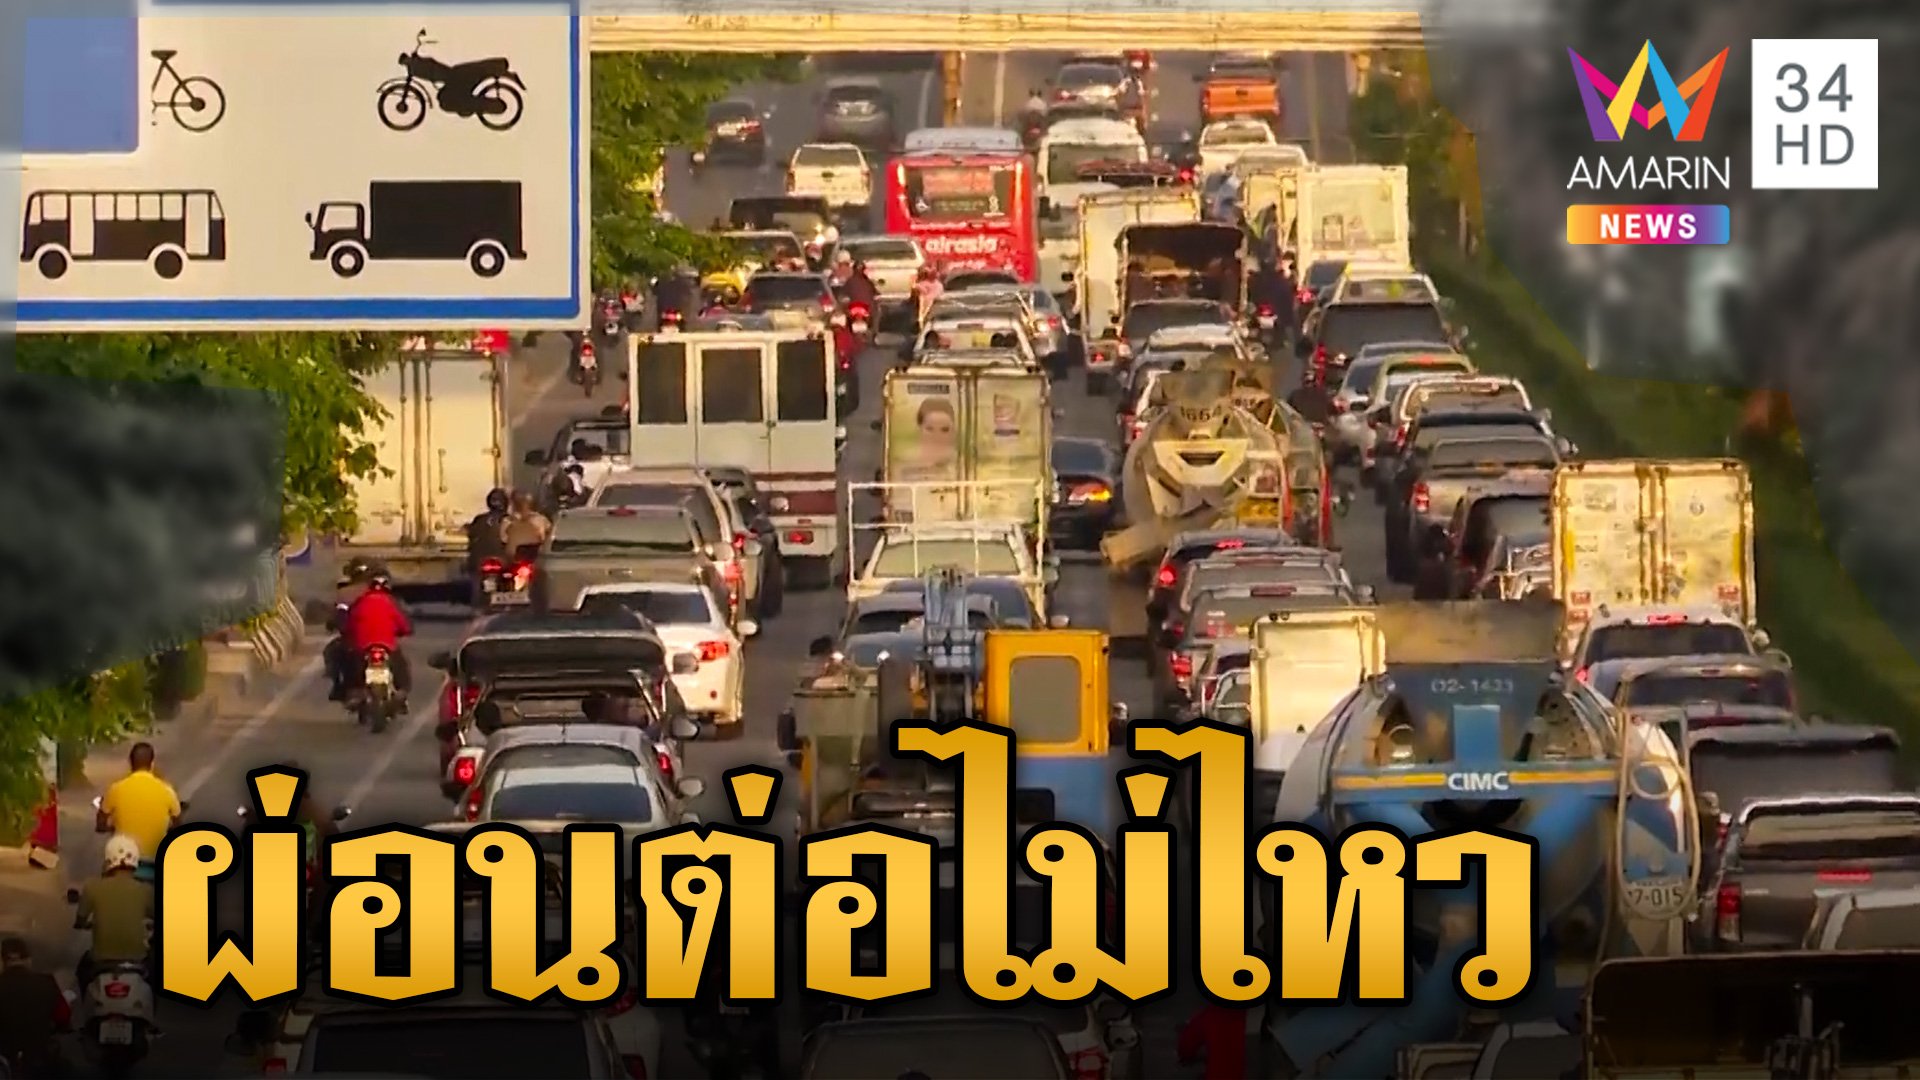 คนไทยเป็นหนี้หัวโต ผ่อนรถ-ผ่อนบ้านไม่ไหว แนวโน้มหนี้เสียกระฉูด! | ข่าวเย็นอมรินทร์ | 19 ก.พ. 67 | AMARIN TVHD34